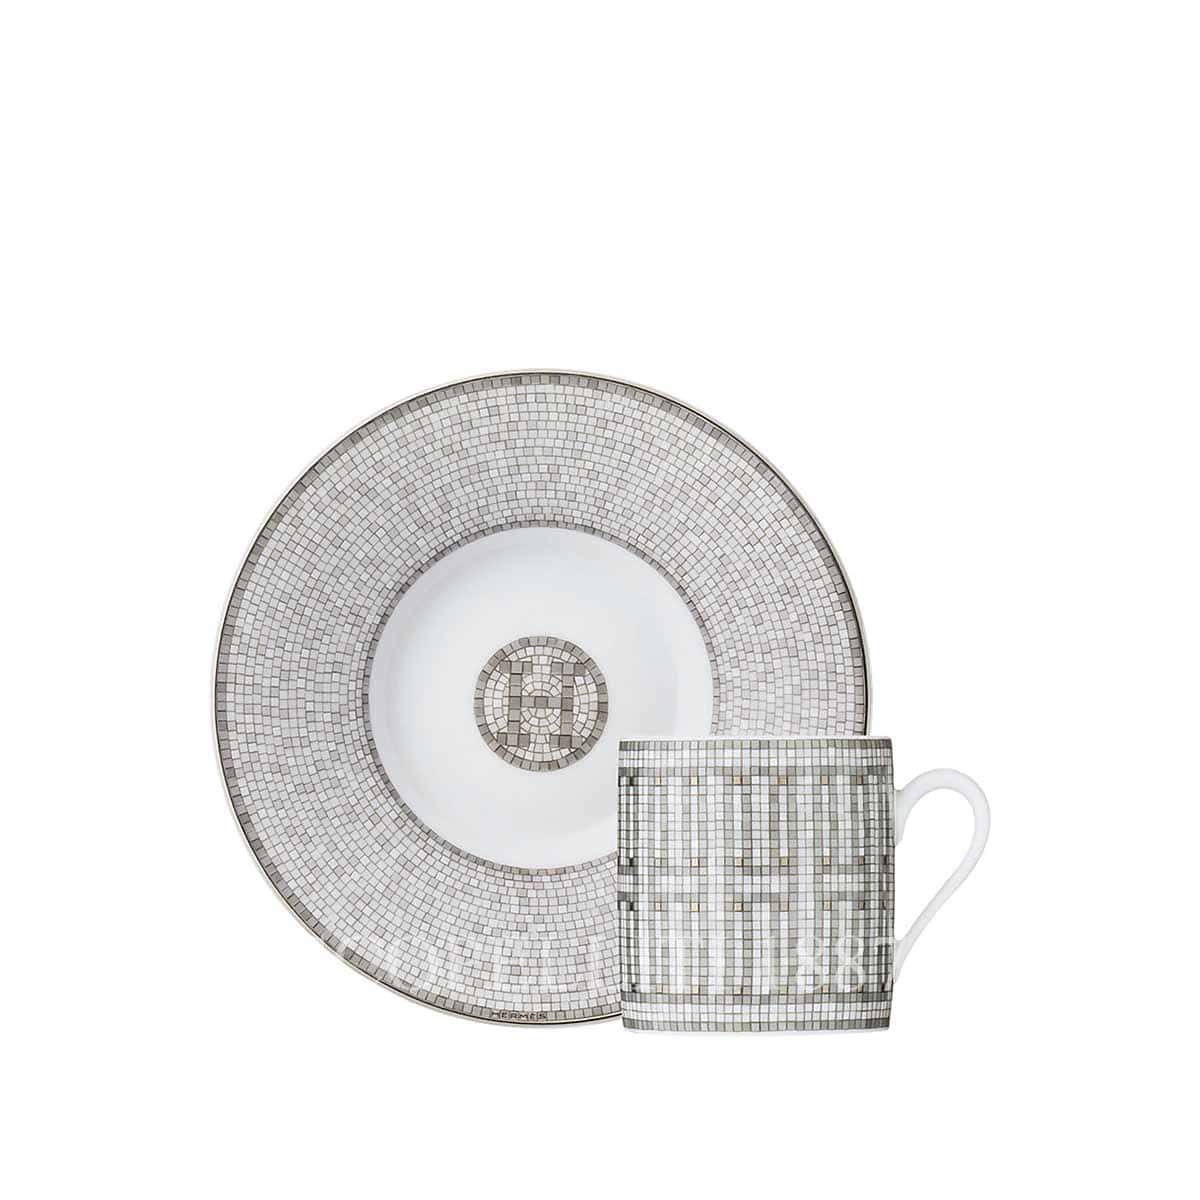 Mosaique au 24 platinum tea cup and saucer